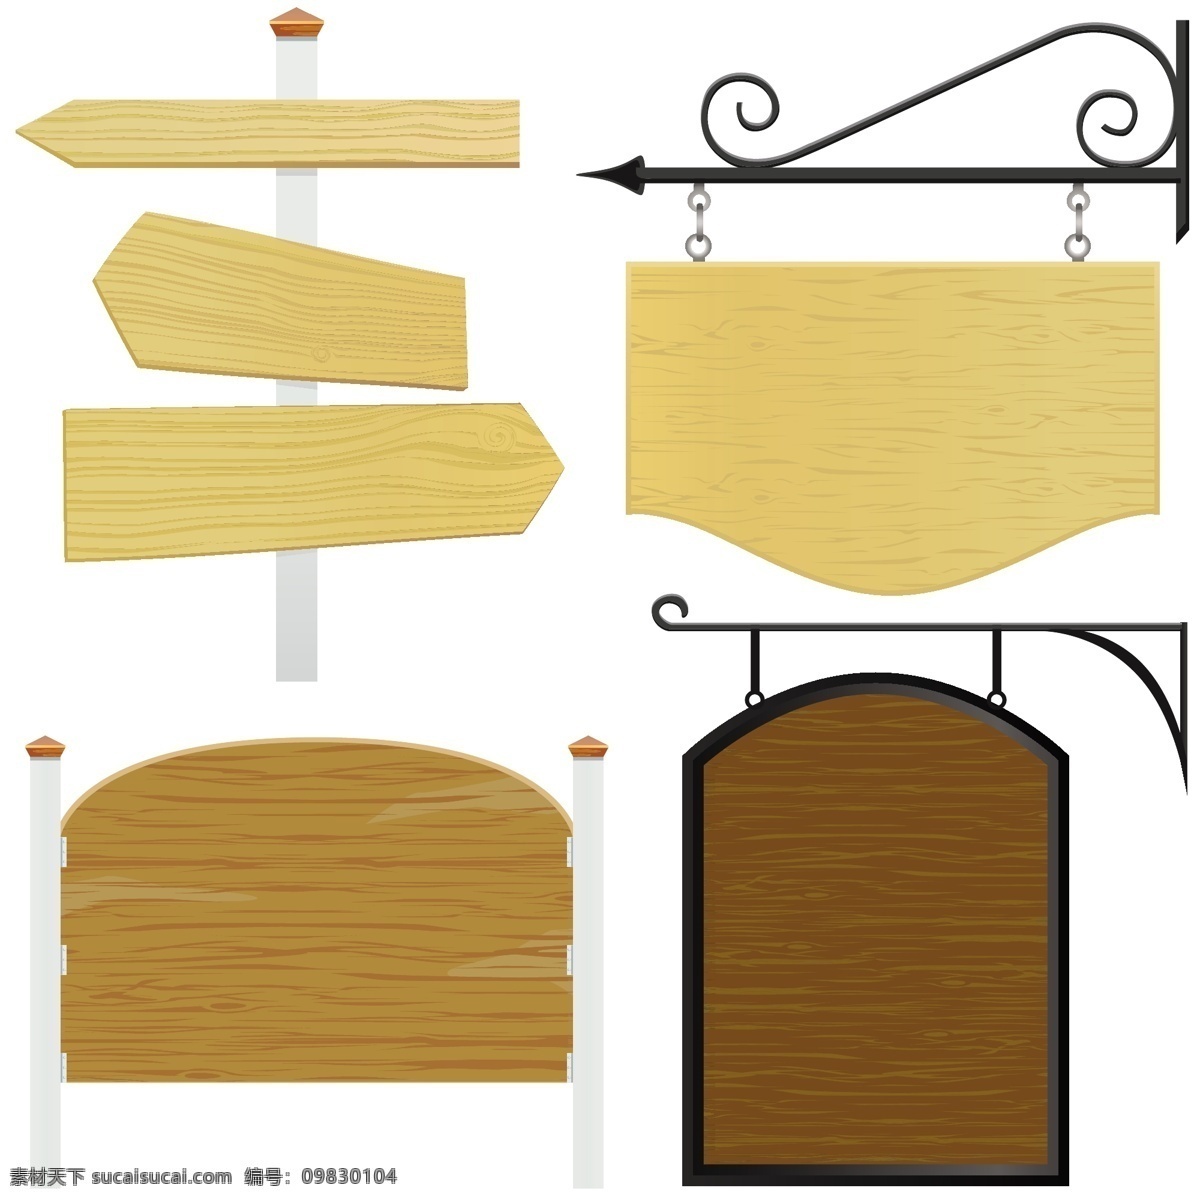 木质 材质 家具 eps矢量 家具床垫 家具画册设计 家具设计 木质材质家具 矢量图 日常生活